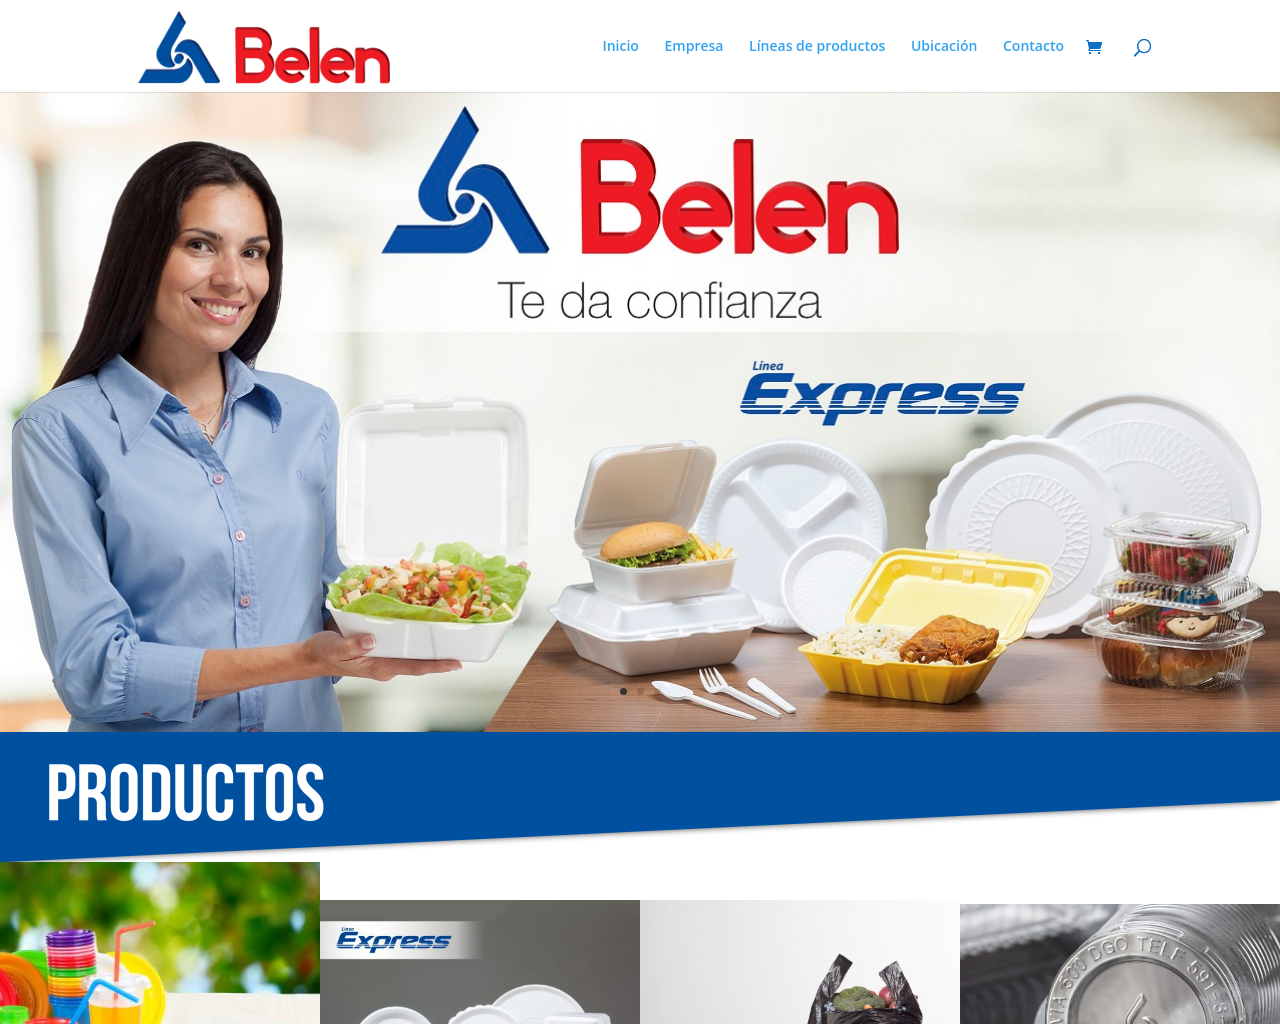 belen.com.bo